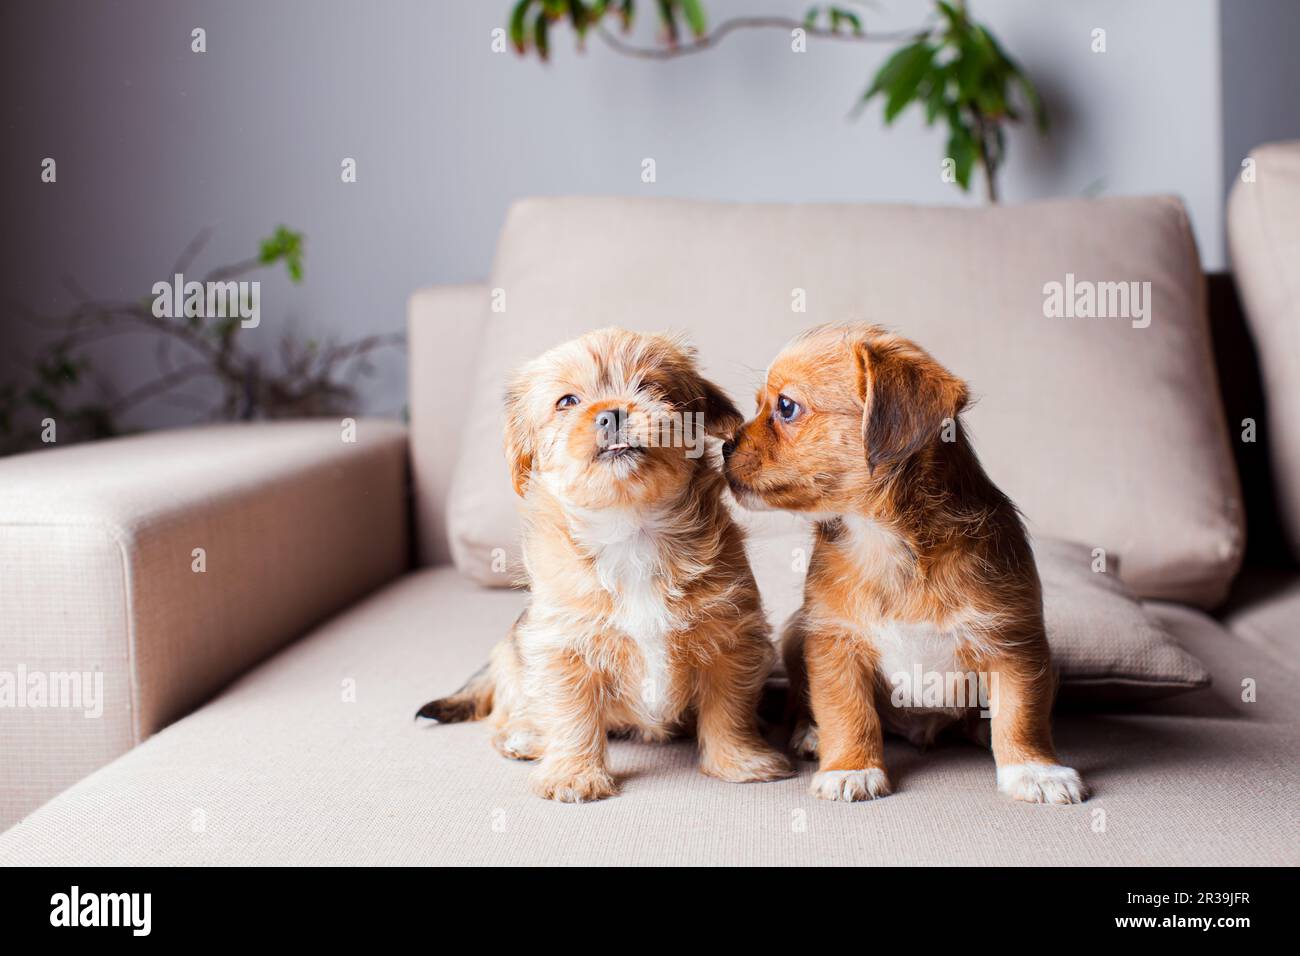 Los hermosos cachorros de Pekingese se familiarizan en el interior Foto de stock